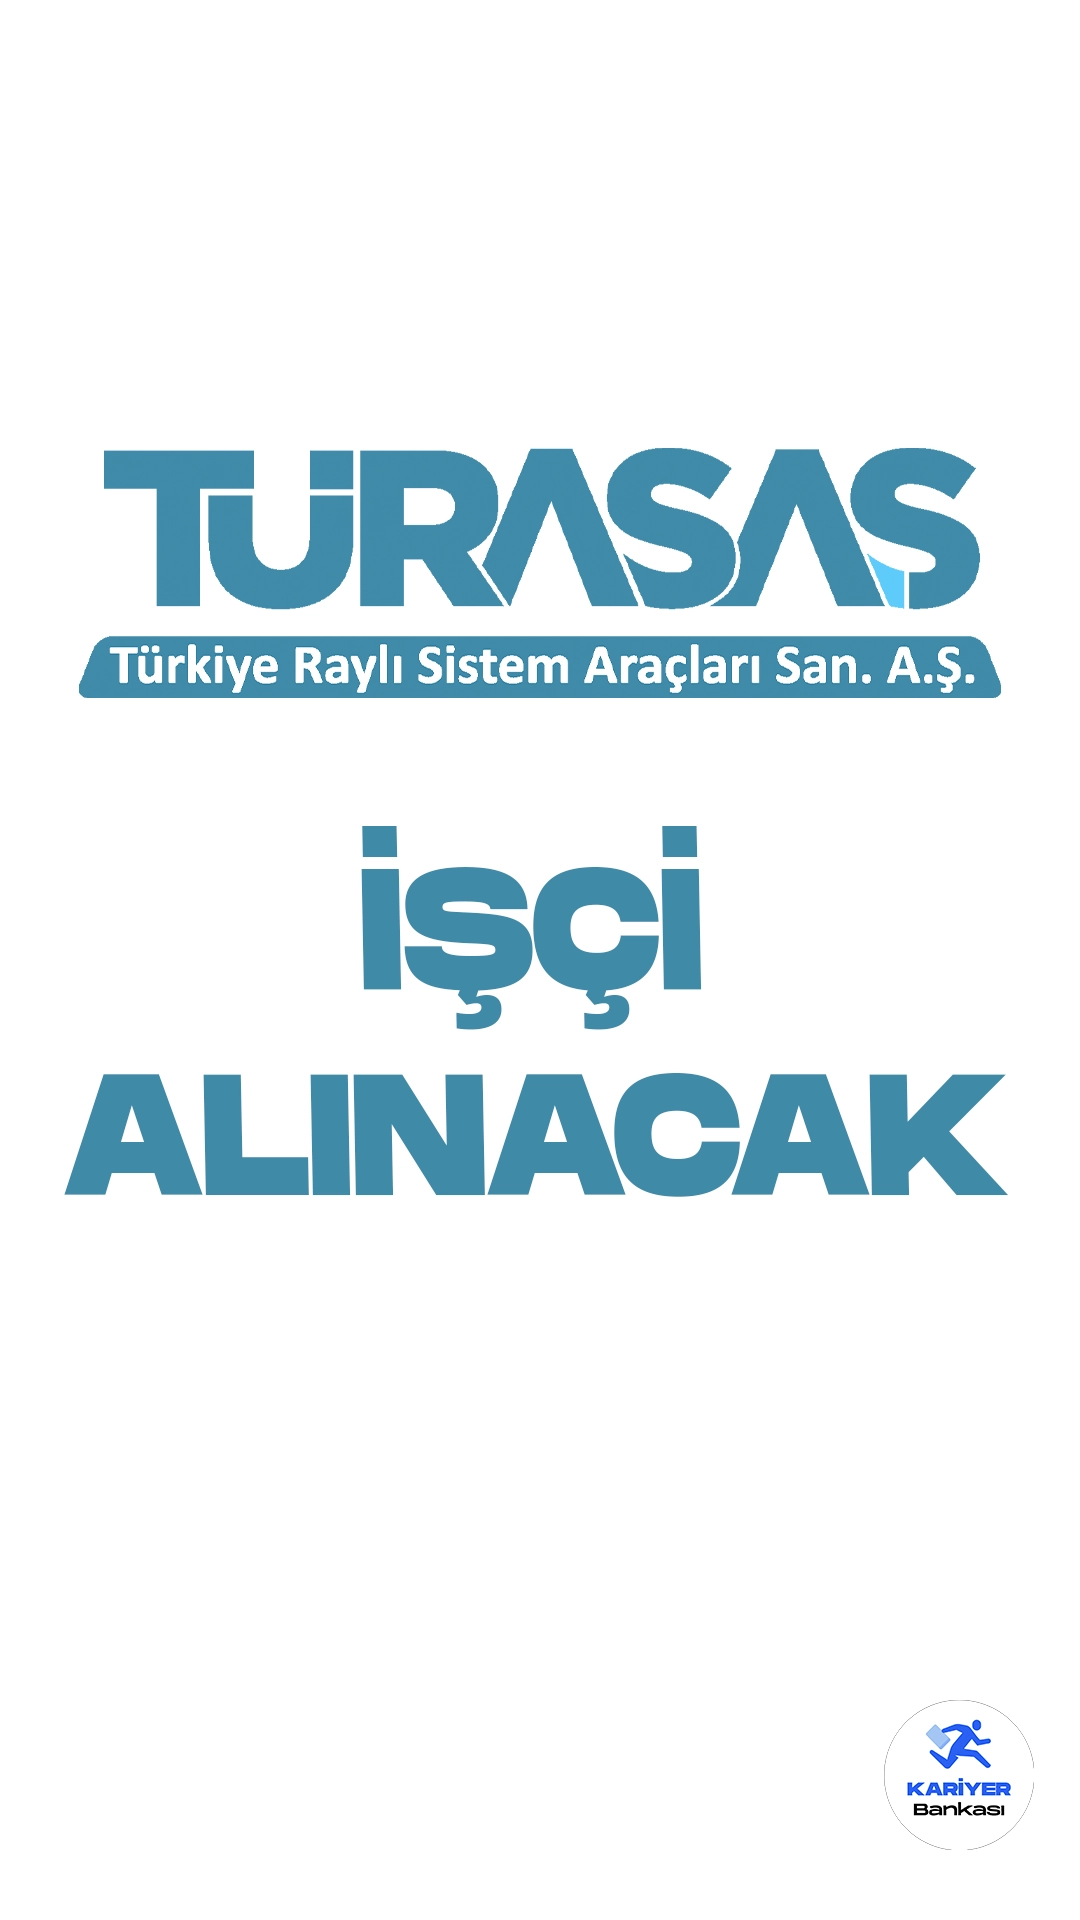 Türkiye Raylı Sistem Araçları Sanayii Anonim Şirketi (TÜRASAŞ) işçi alımı duyurusu yayımlandı. Cumhurbaşkanlığı Strateji ve Bütçe Başkanlığı Kamu ilan sayfasında yayımlanan duyuruda, TÜRASAŞ'a işçi alımı yapılacağı aktarıldı. 2'si eski hükümlü olmak üzere 213 işçi alımı başvuruları 25 Eylül itibarıyla alınacak. Başvuru yapacak adayların belirtilen başvuru şartlarını dikkatle incelemesi gerekmektedir.